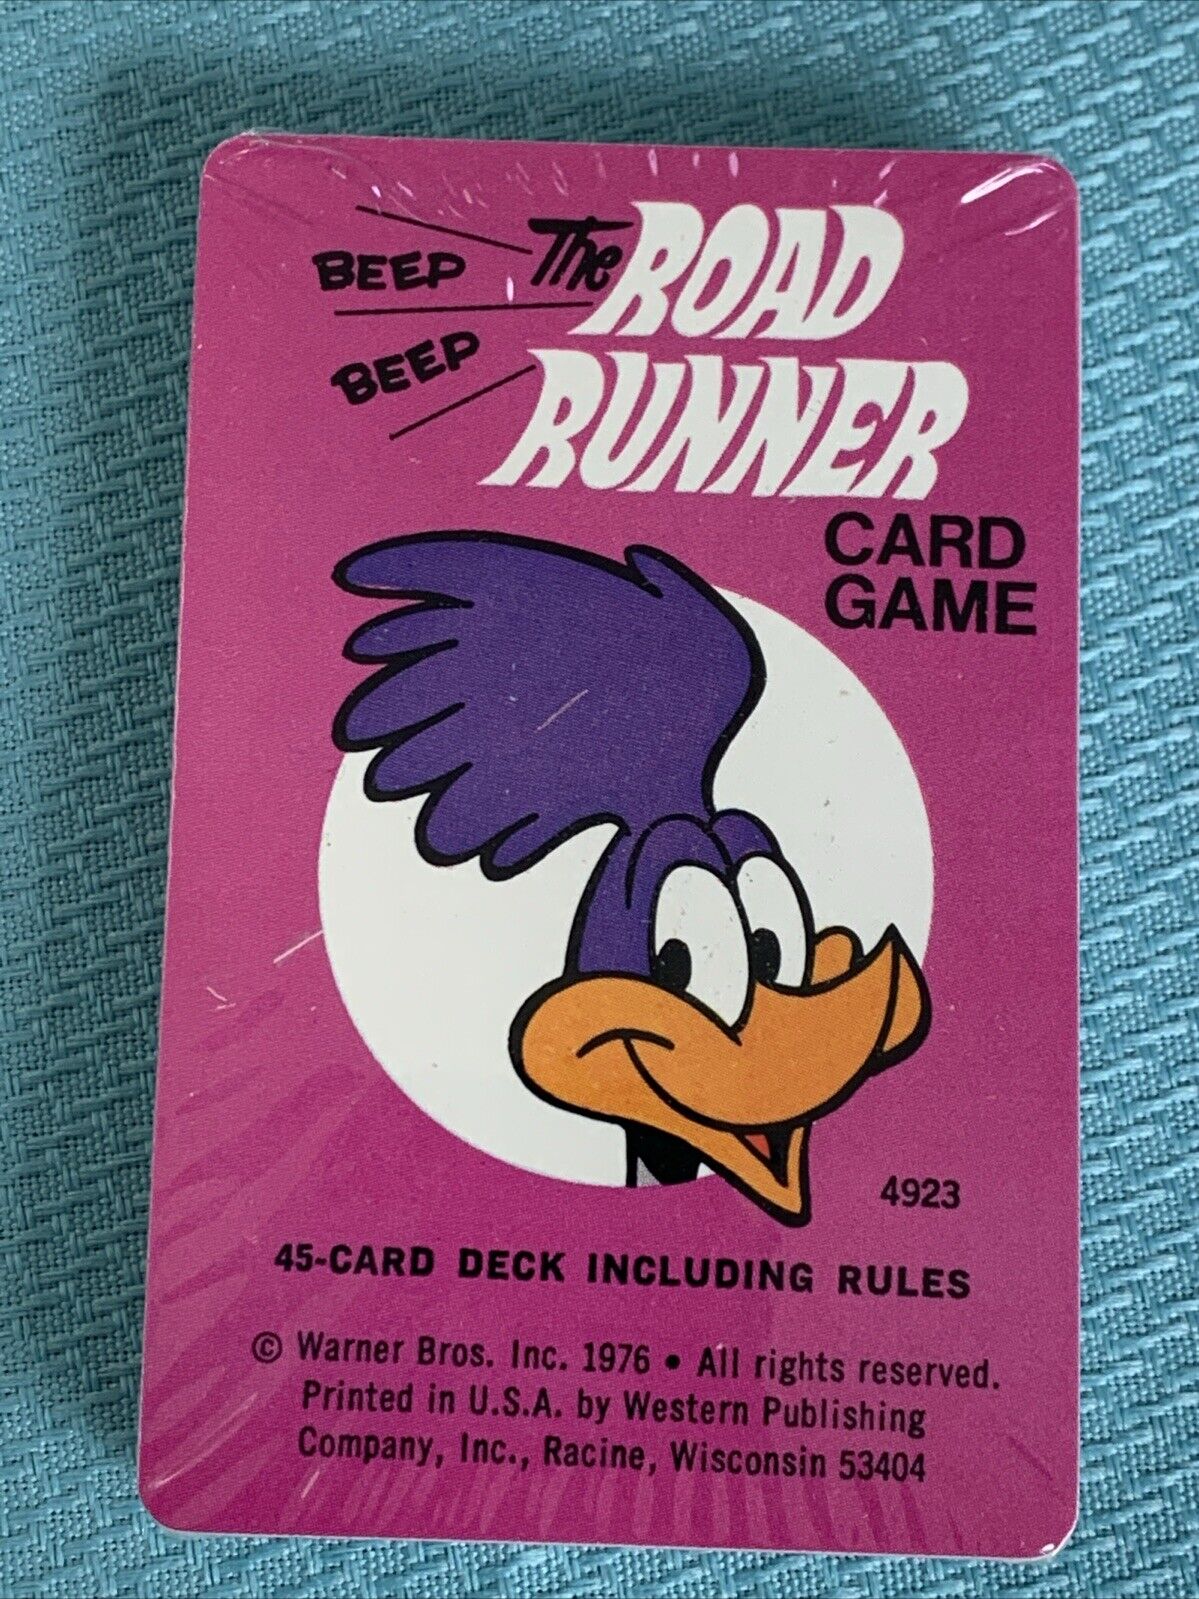 1976 Looney Tunes Road Runner Card Game Warner Bros Mint NOS Original Packaging